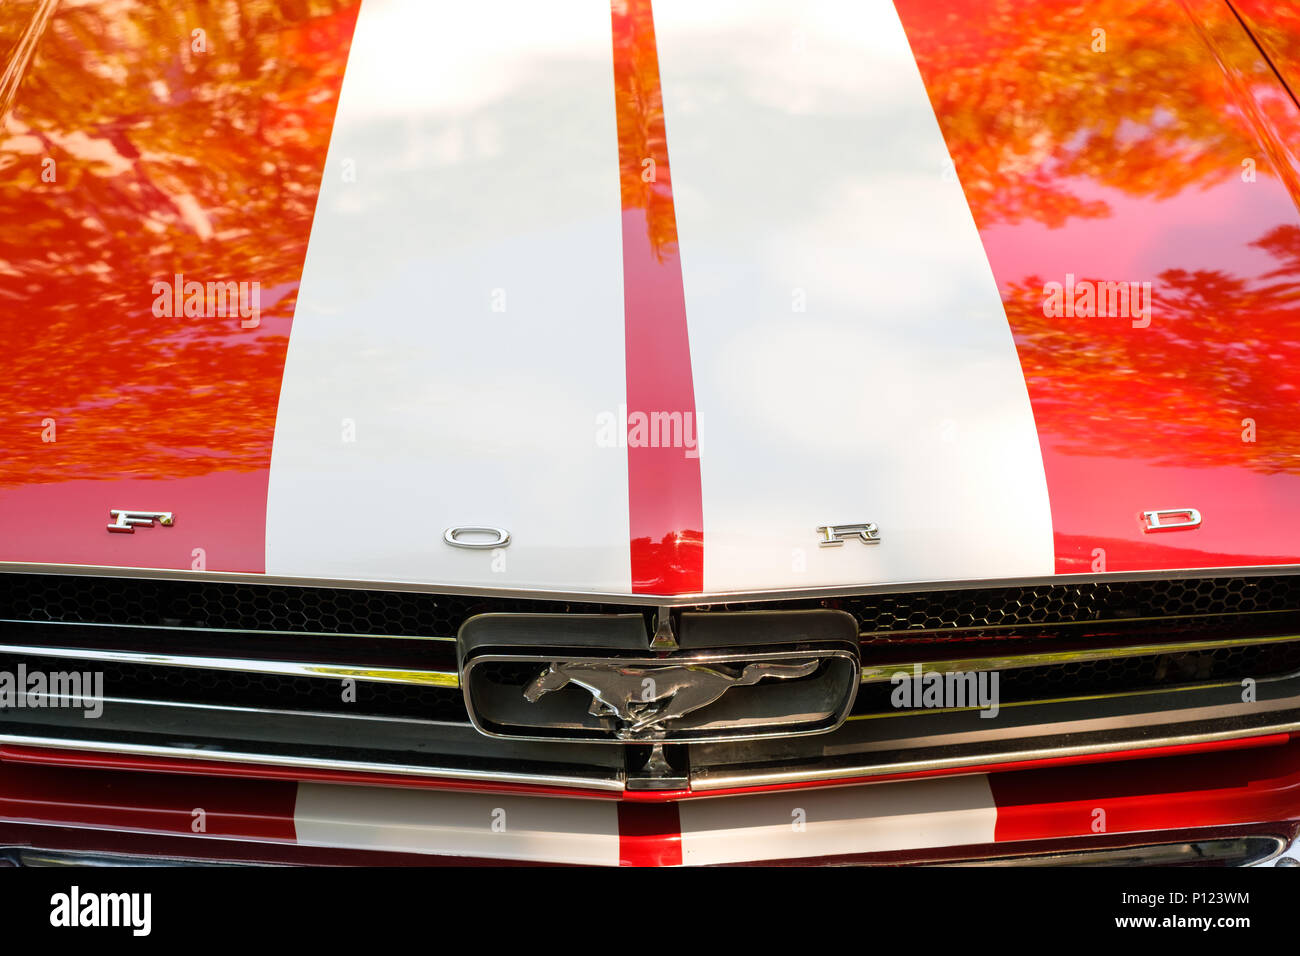 Berlin, Allemagne - 09 juin 2018 : la calandre et le capot d'une Ford Mustang voiture montrant la conception de logo / nom de marque à l'événement automobile Oldtimer en B Banque D'Images